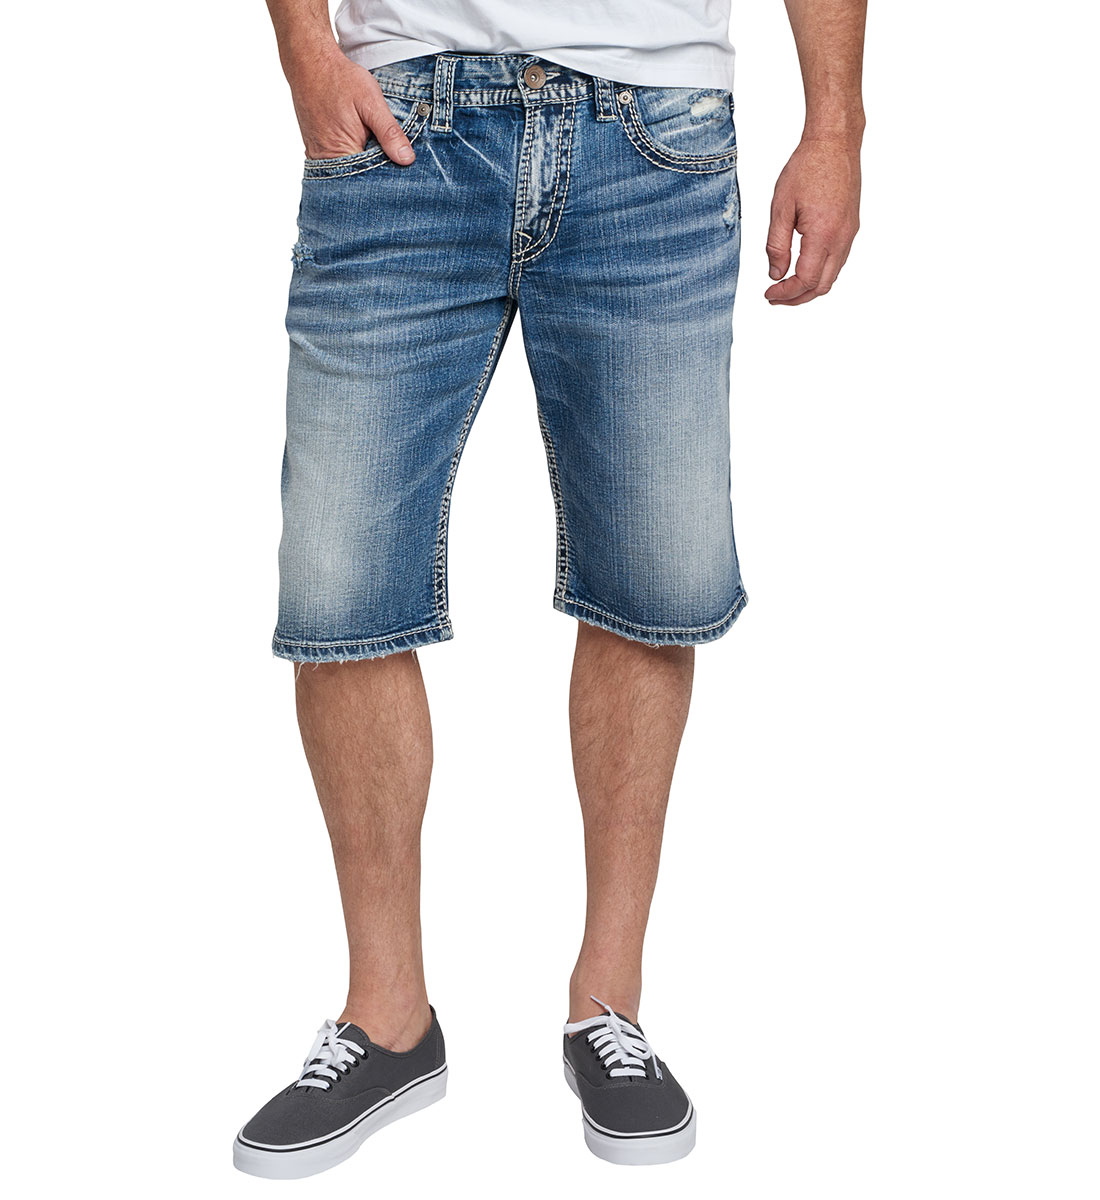 mens silver jean shorts